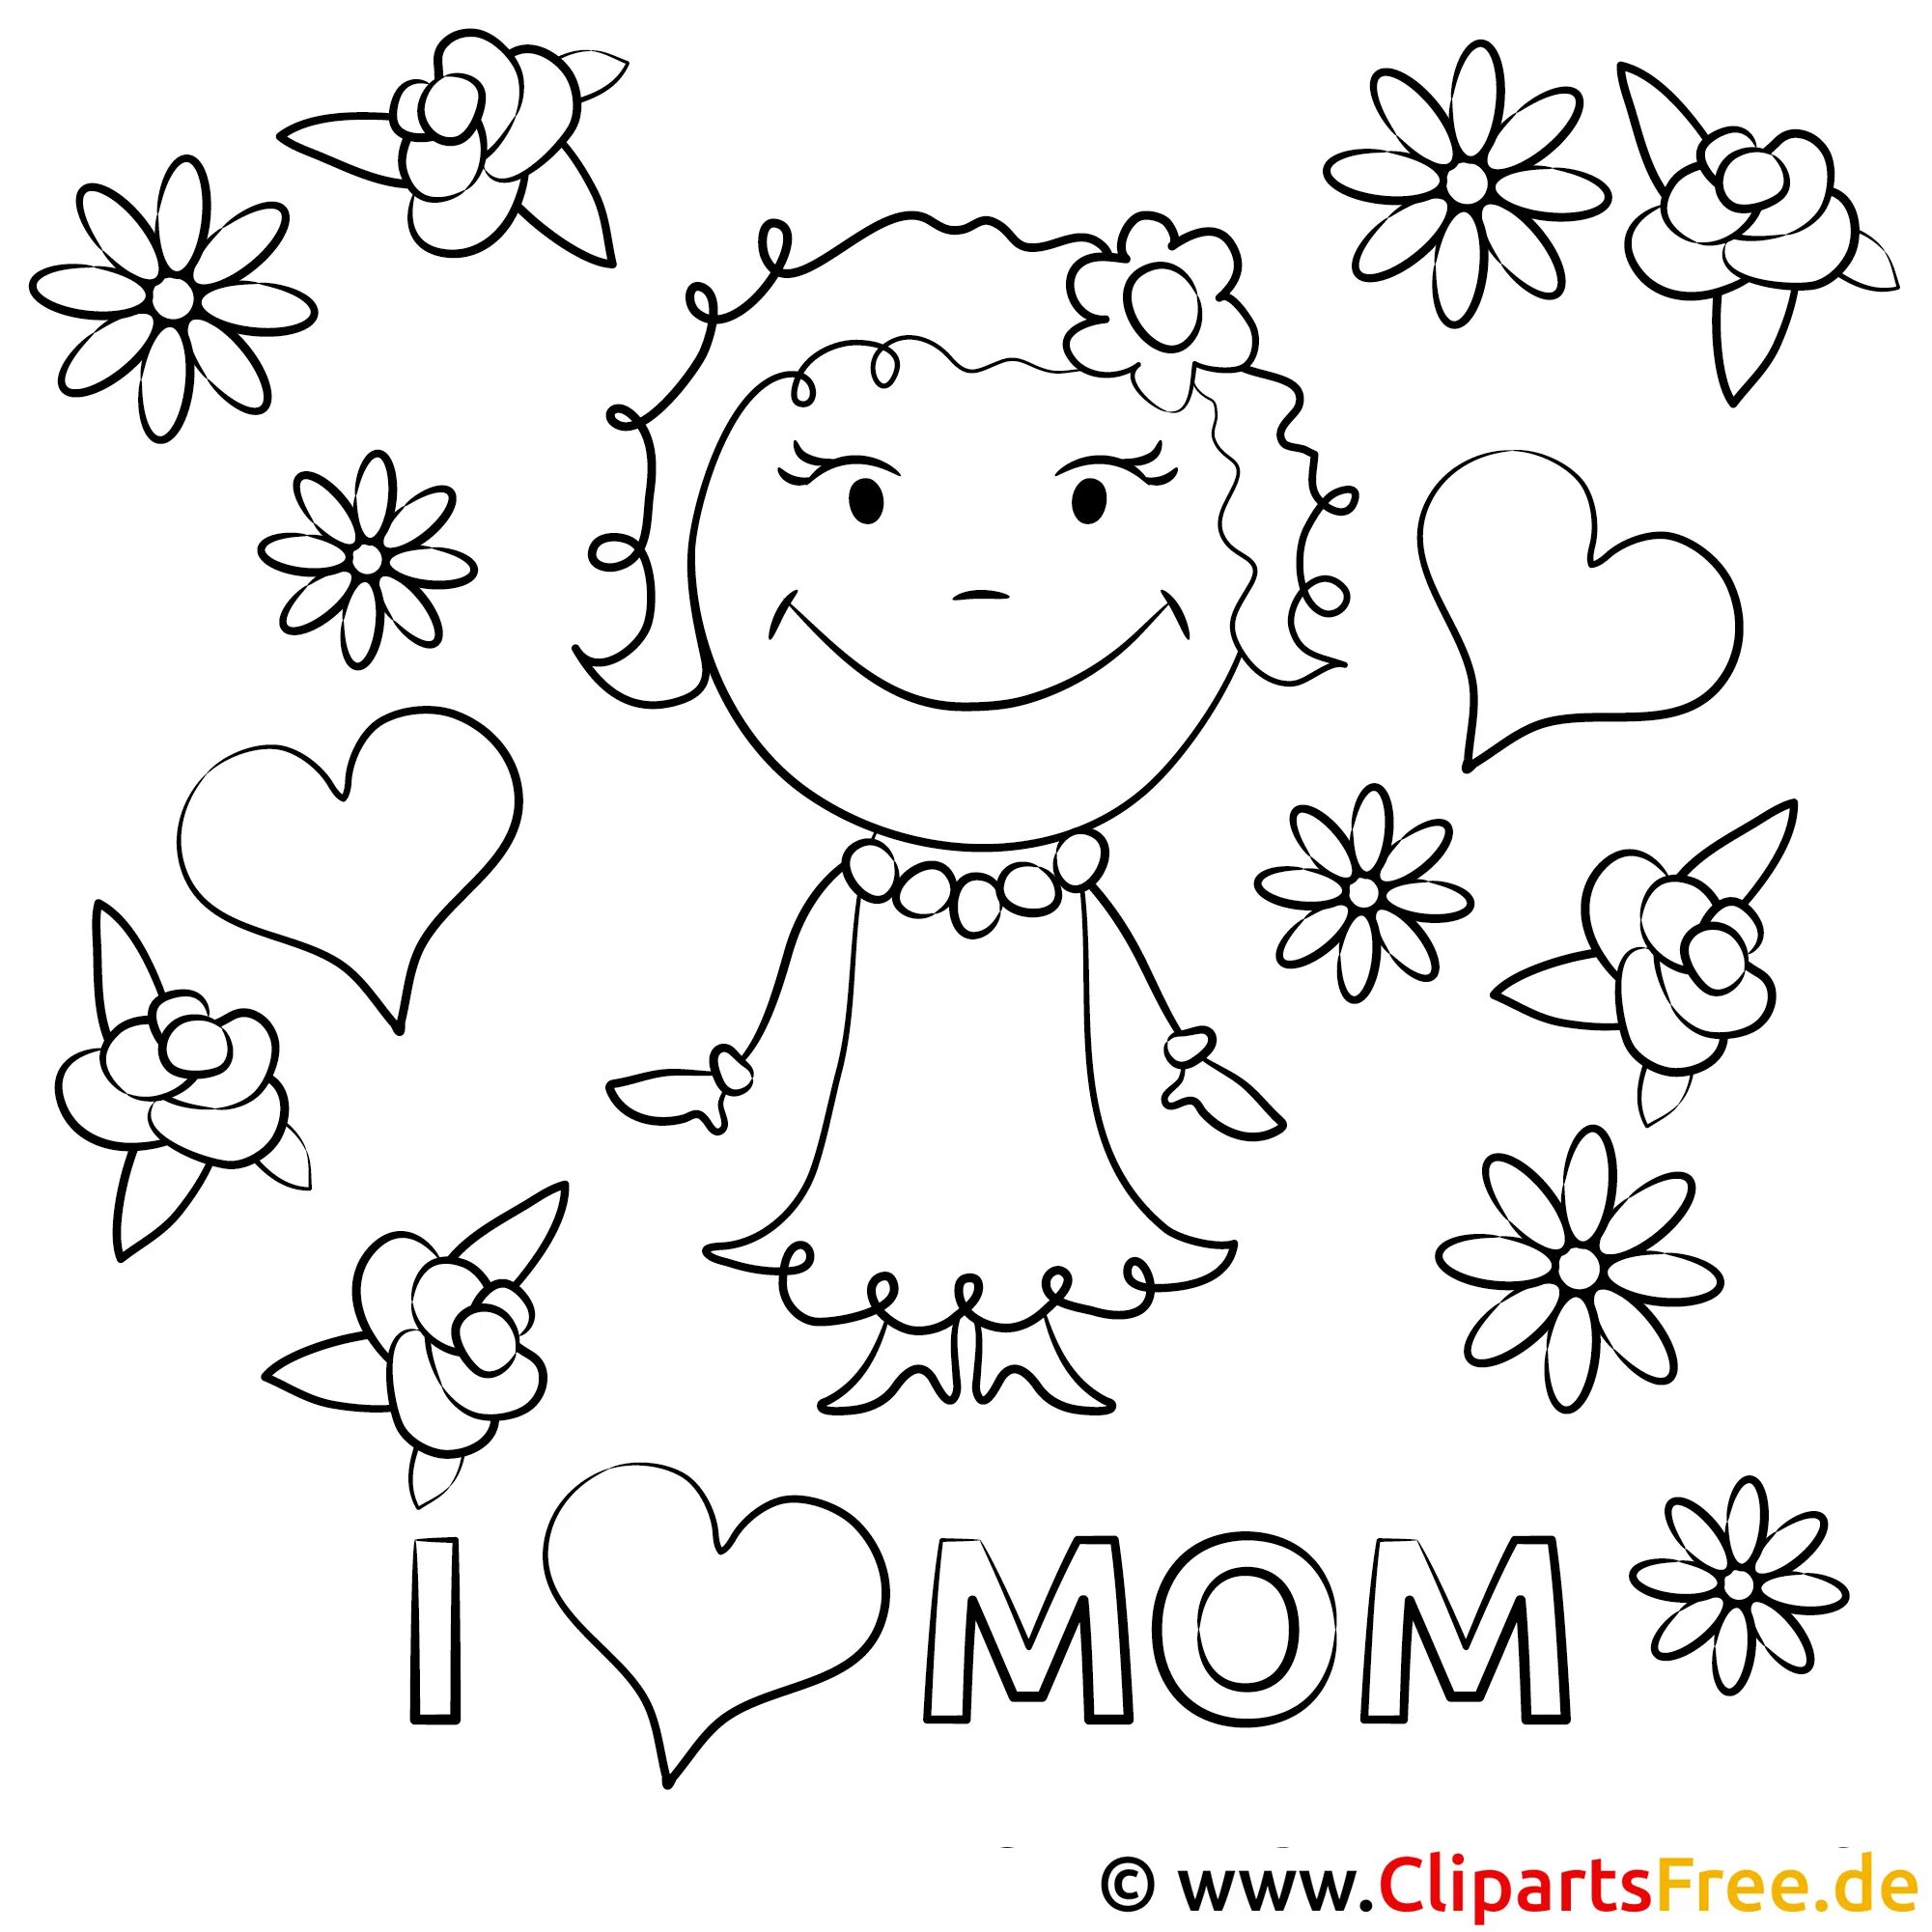 Раскраски мамы для детей 3 4 лет. Рисунок для мамы раскраска. Раскраска ко Дню матери. Картинка мама раскраска. Раскраска ко Дню мамы.